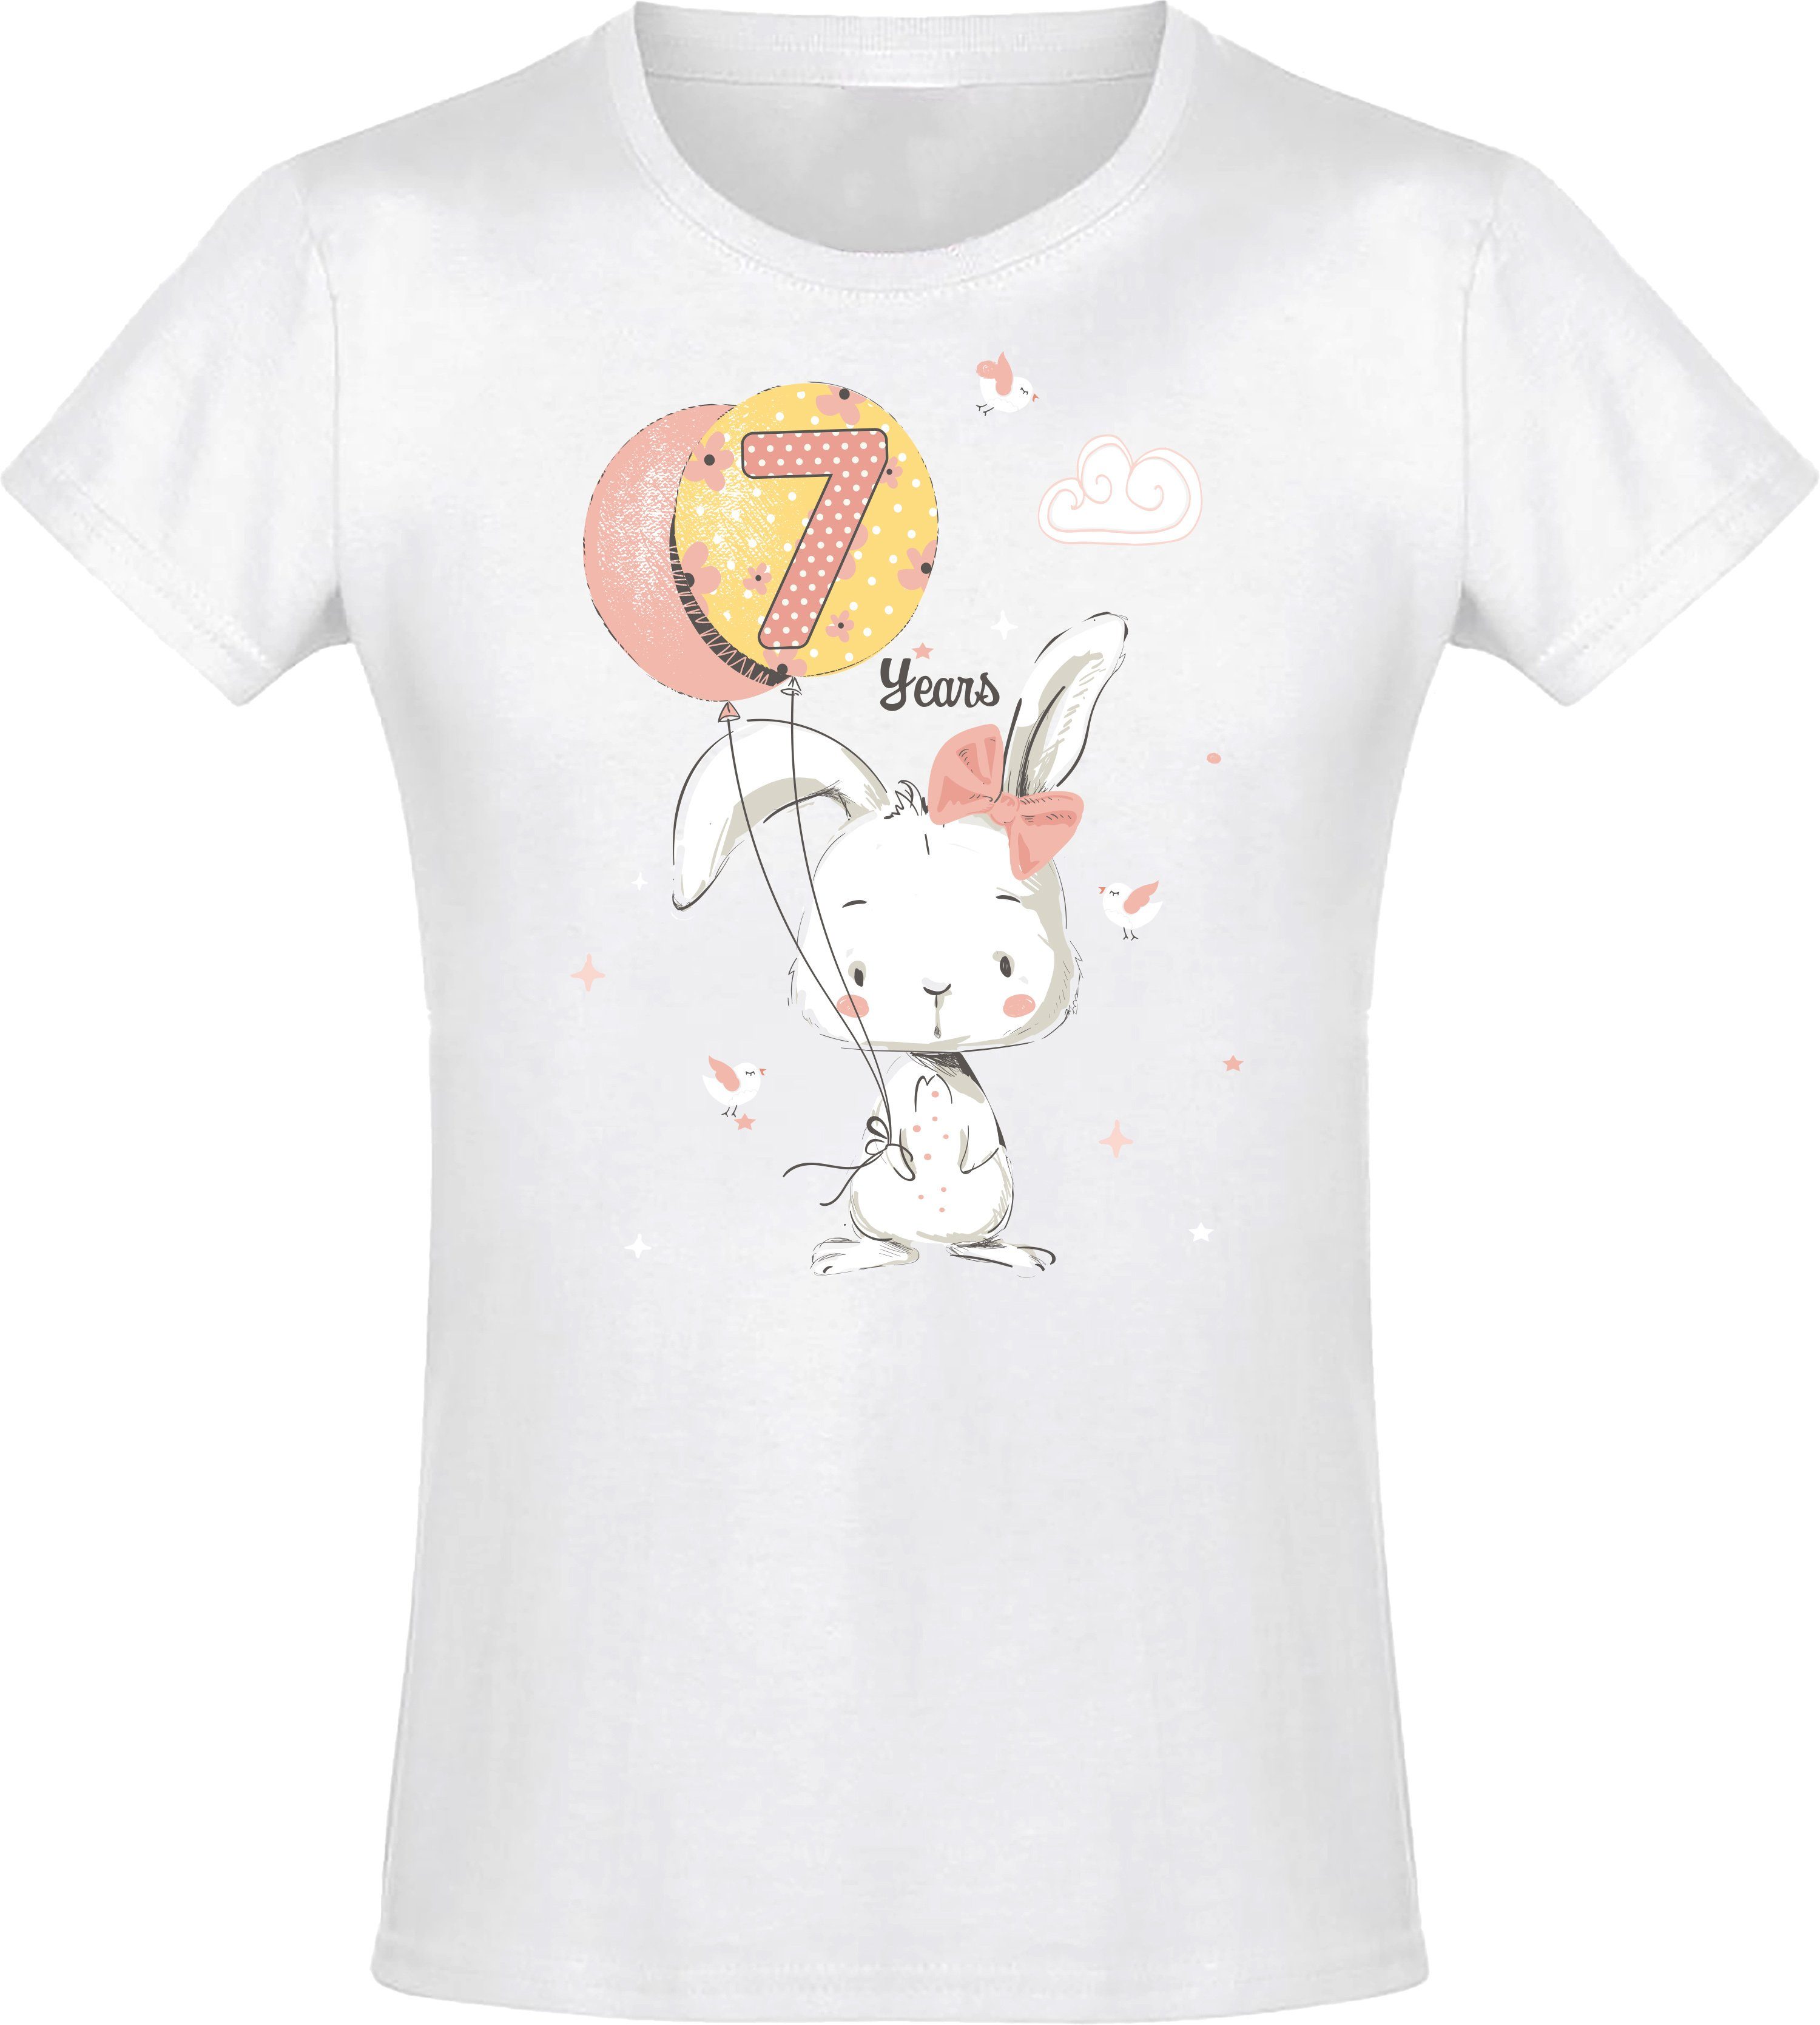 Baddery Print-Shirt Geburstagsgeschenk für Mädchen : 7 Jahre mit Hase hochwertiger Siebdruck, aus Baumwolle Weiß